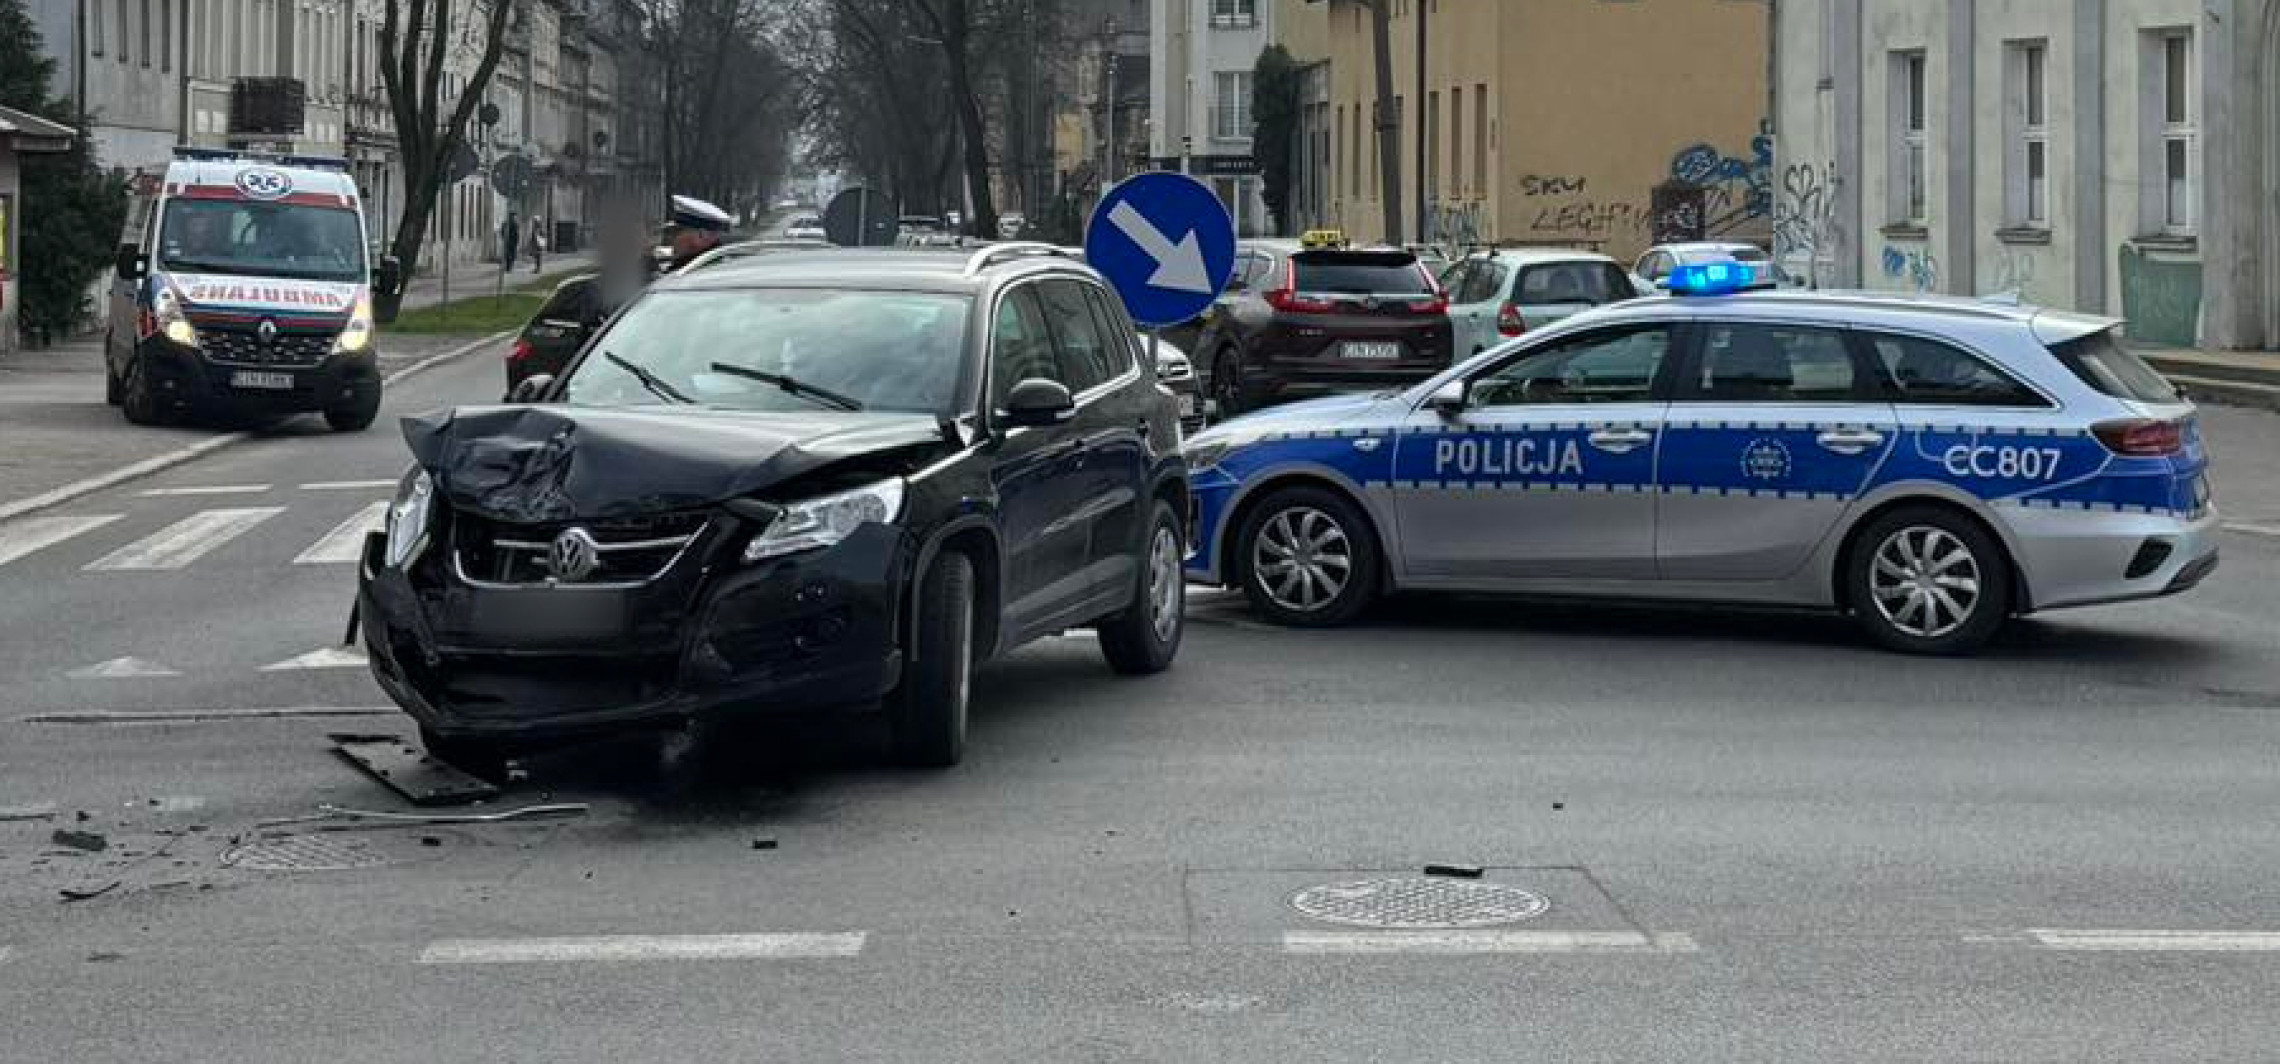 Inowrocław - Zderzenie aut w centrum. Utrudnienia na drodze